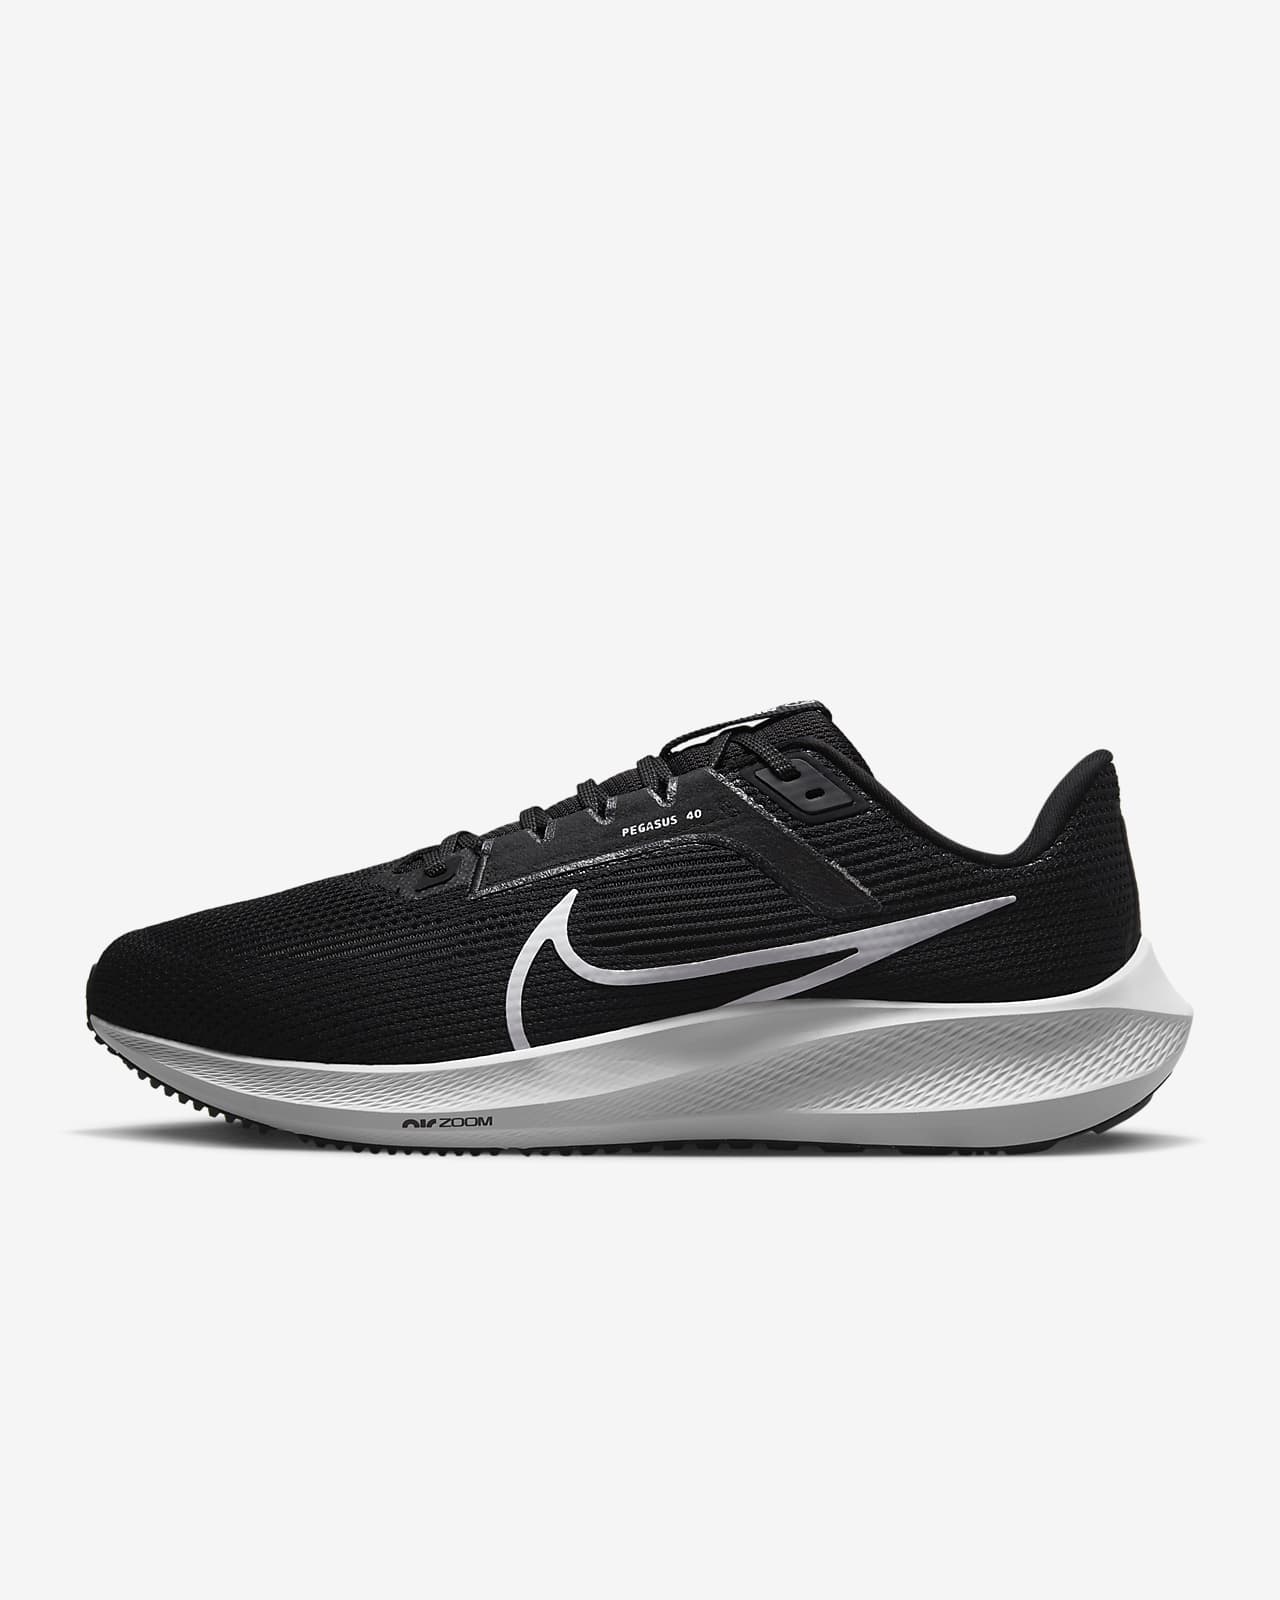 Ανδρικά παπούτσια για τρέξιμο σε δρόμο Nike Pegasus 40 (πολύ φαρδιά)